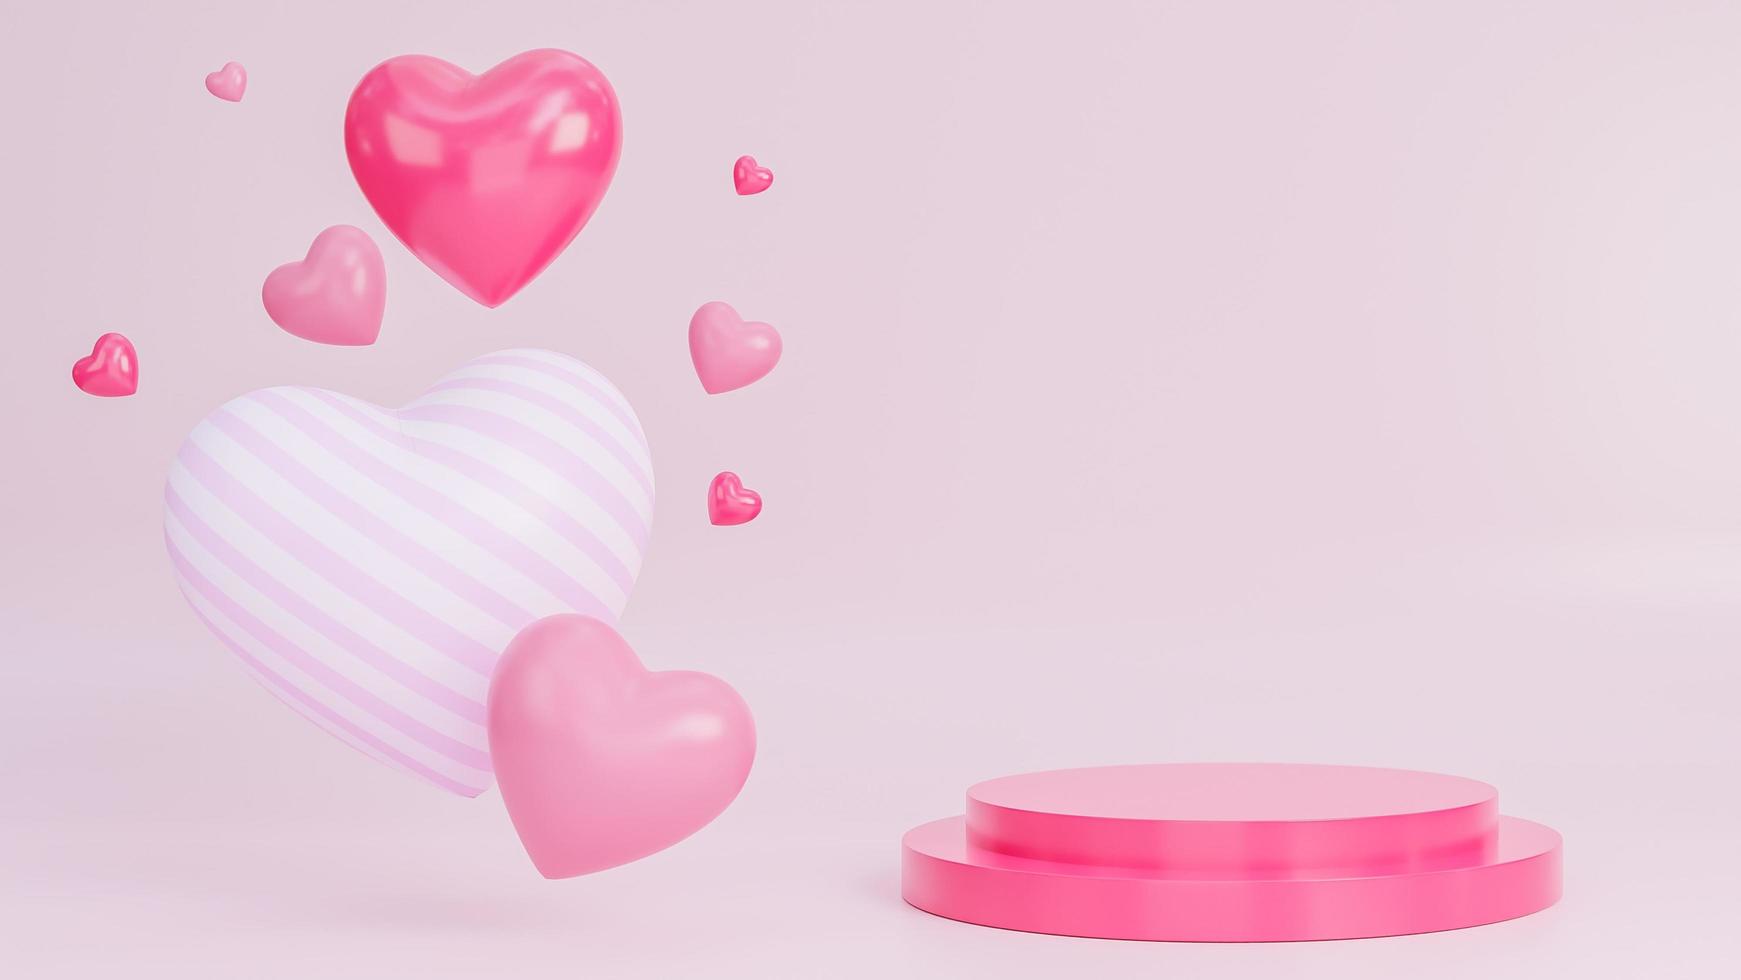 glad alla hjärtans dag banner med många hjärtan 3d-objekt och podium för produktpresentation på rosa bakgrund., 3D-modell och illustration. foto